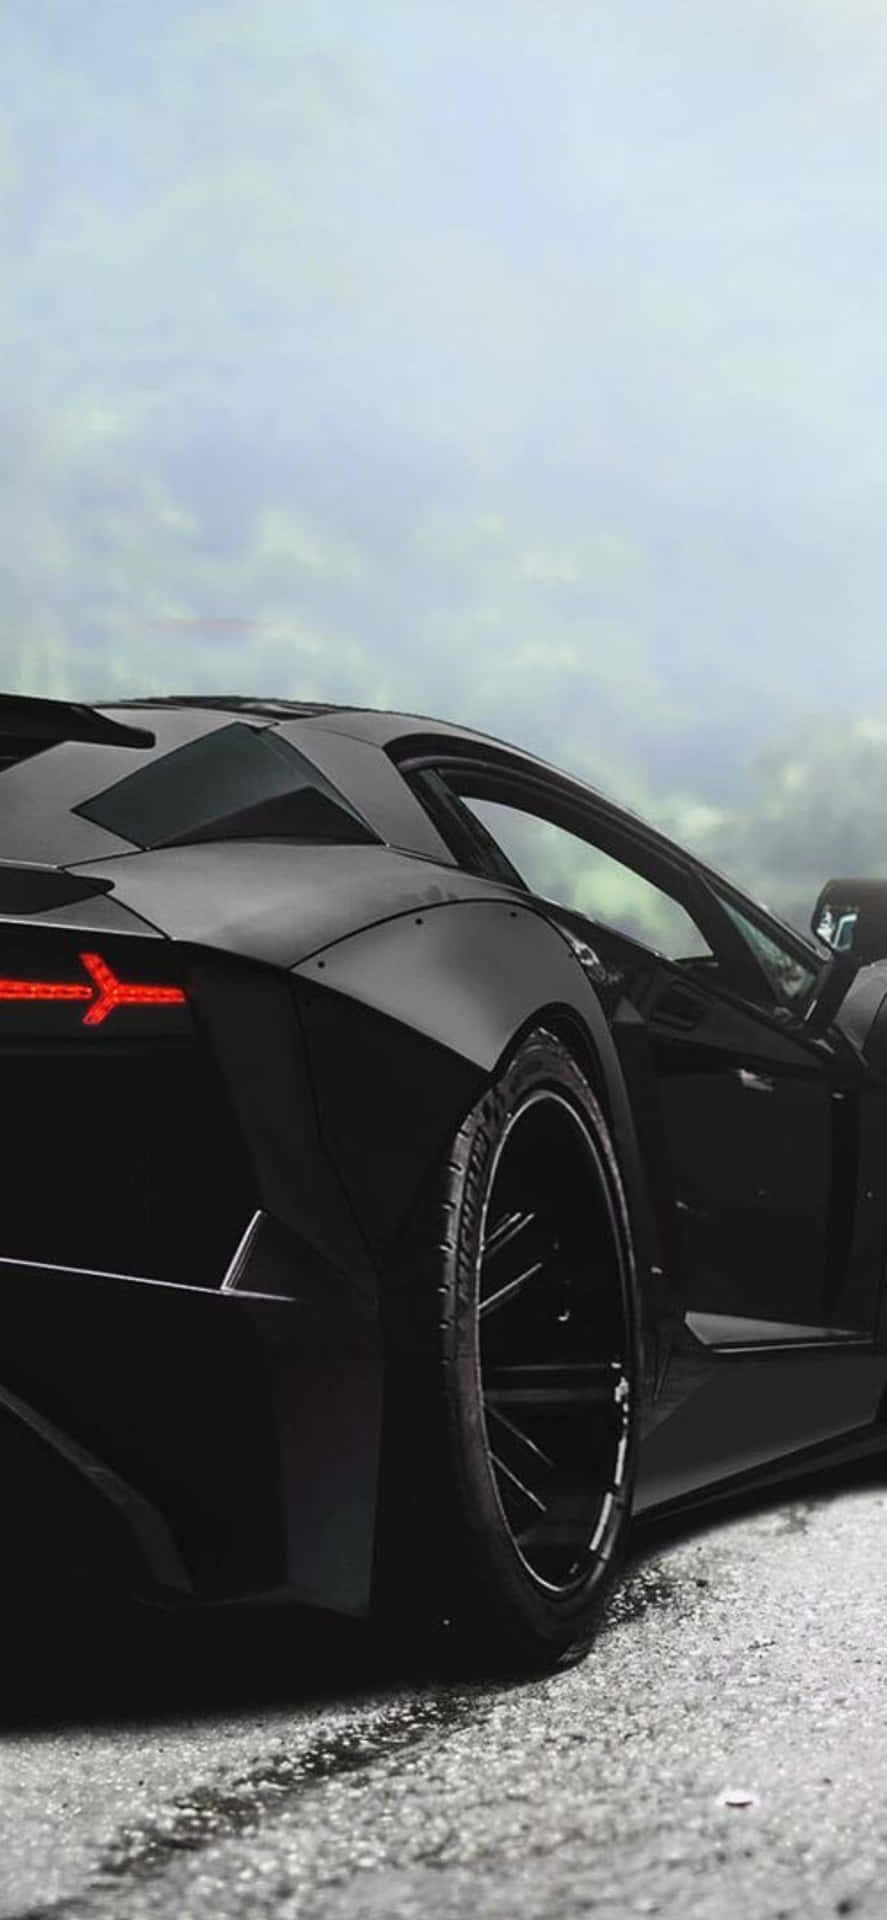 Iphonexs Max Lamborghini Svart Bakgrundsbild Från Baksidan.